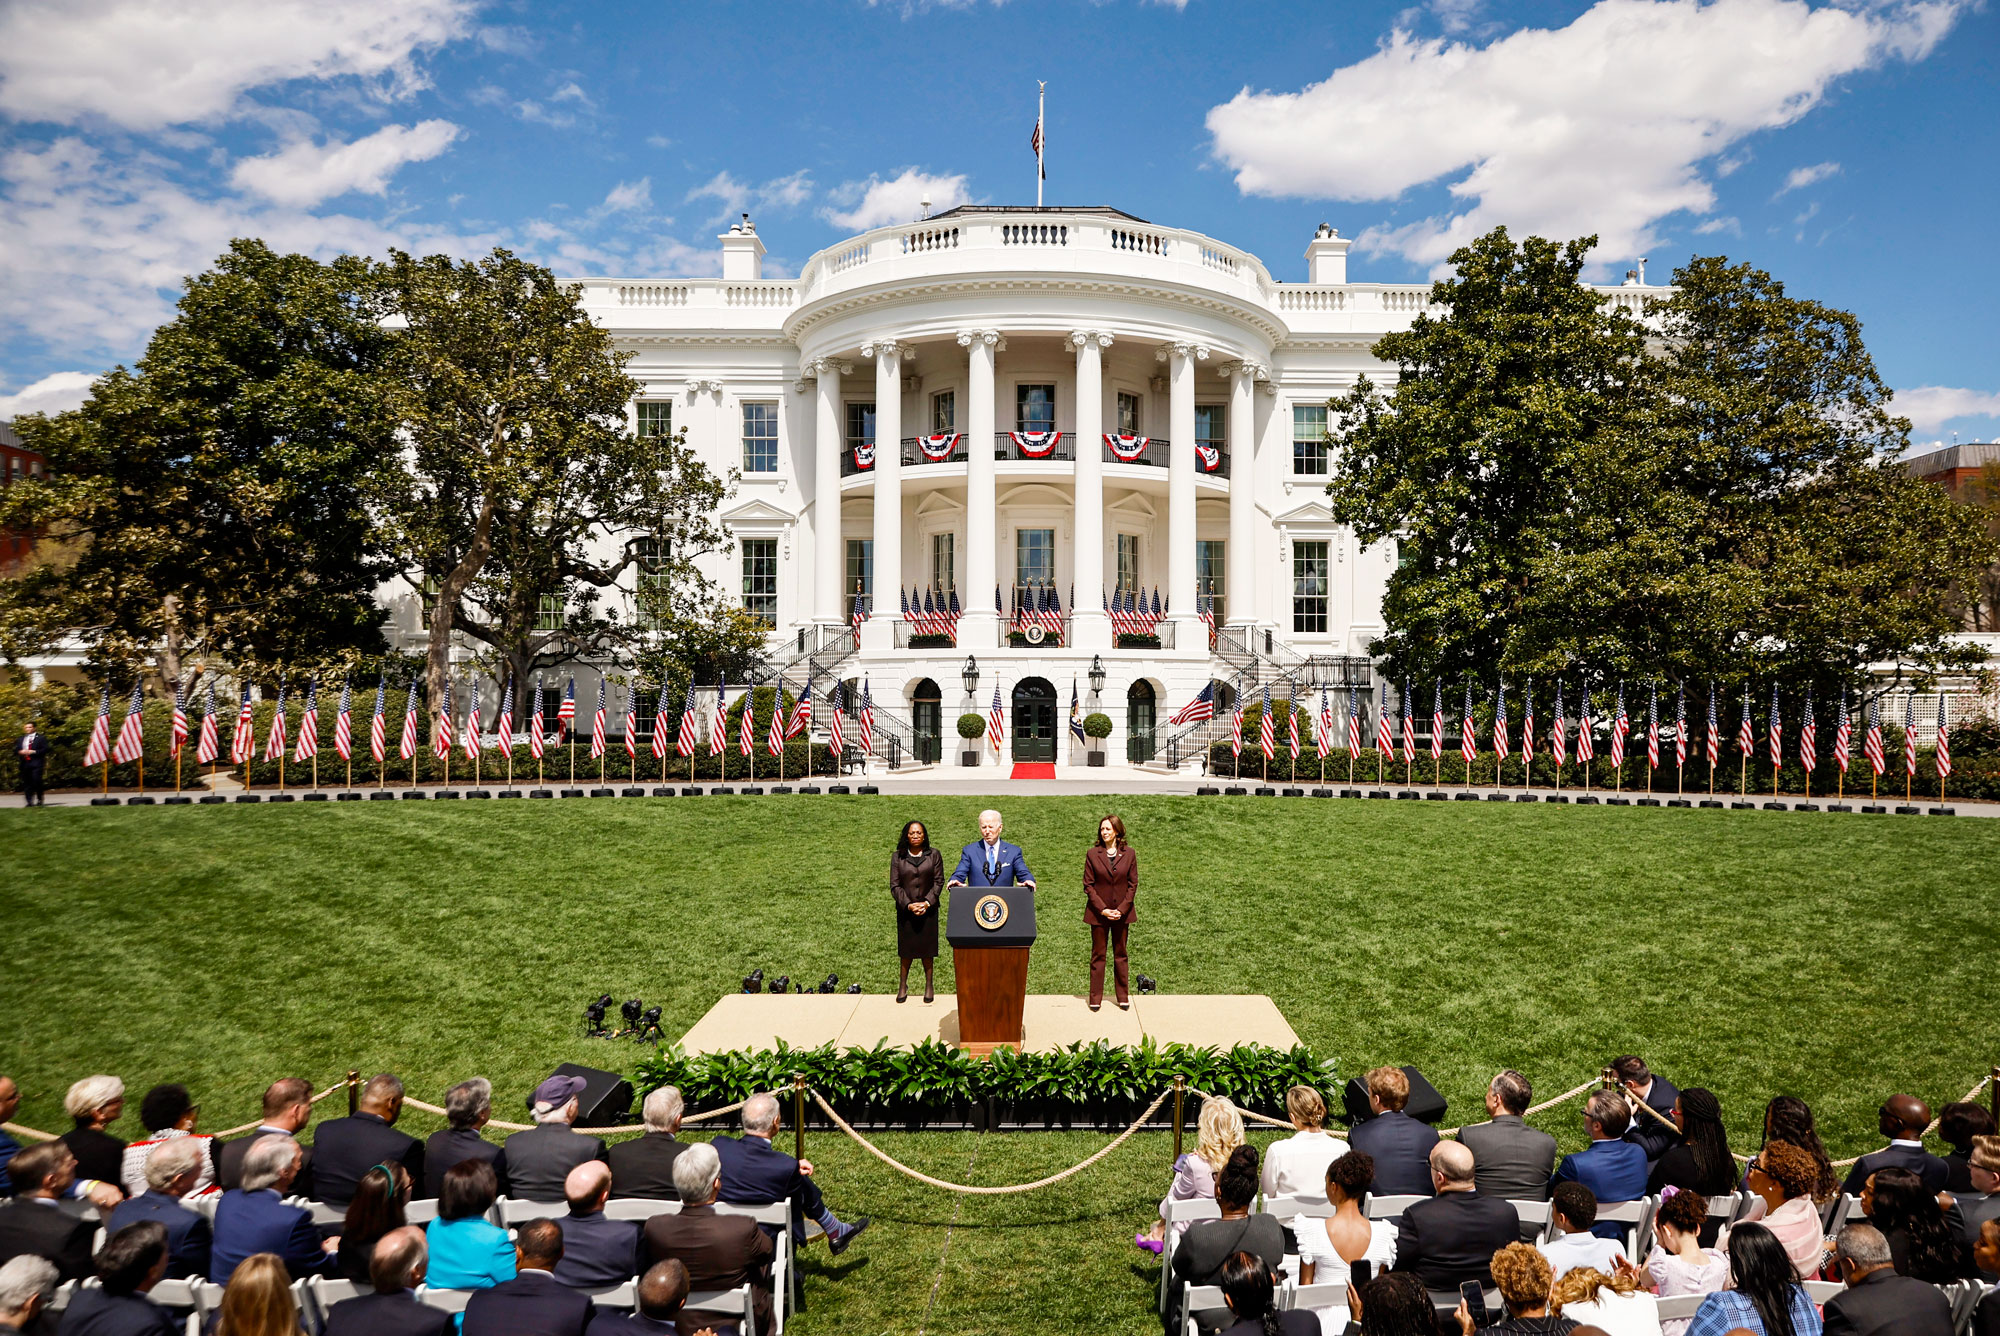 Tổng thống Joe Biden và Phó Tổng thống Kamala Harris (bên phải) tham dự một sự kiện tại Bãi cỏ phía Nam của Tòa Bạch Ốc vào ngày 08/04/2022. Cả hai nhà lãnh đạo này đều ủng hộ cải tổ Tối cao Pháp viện, cho thấy Đảng Dân Chủ có ý định tập trung vào vấn đề này trước cuộc bầu cử tổng thống năm 2024. (Ảnh: Chip Somodevilla/Getty Images)